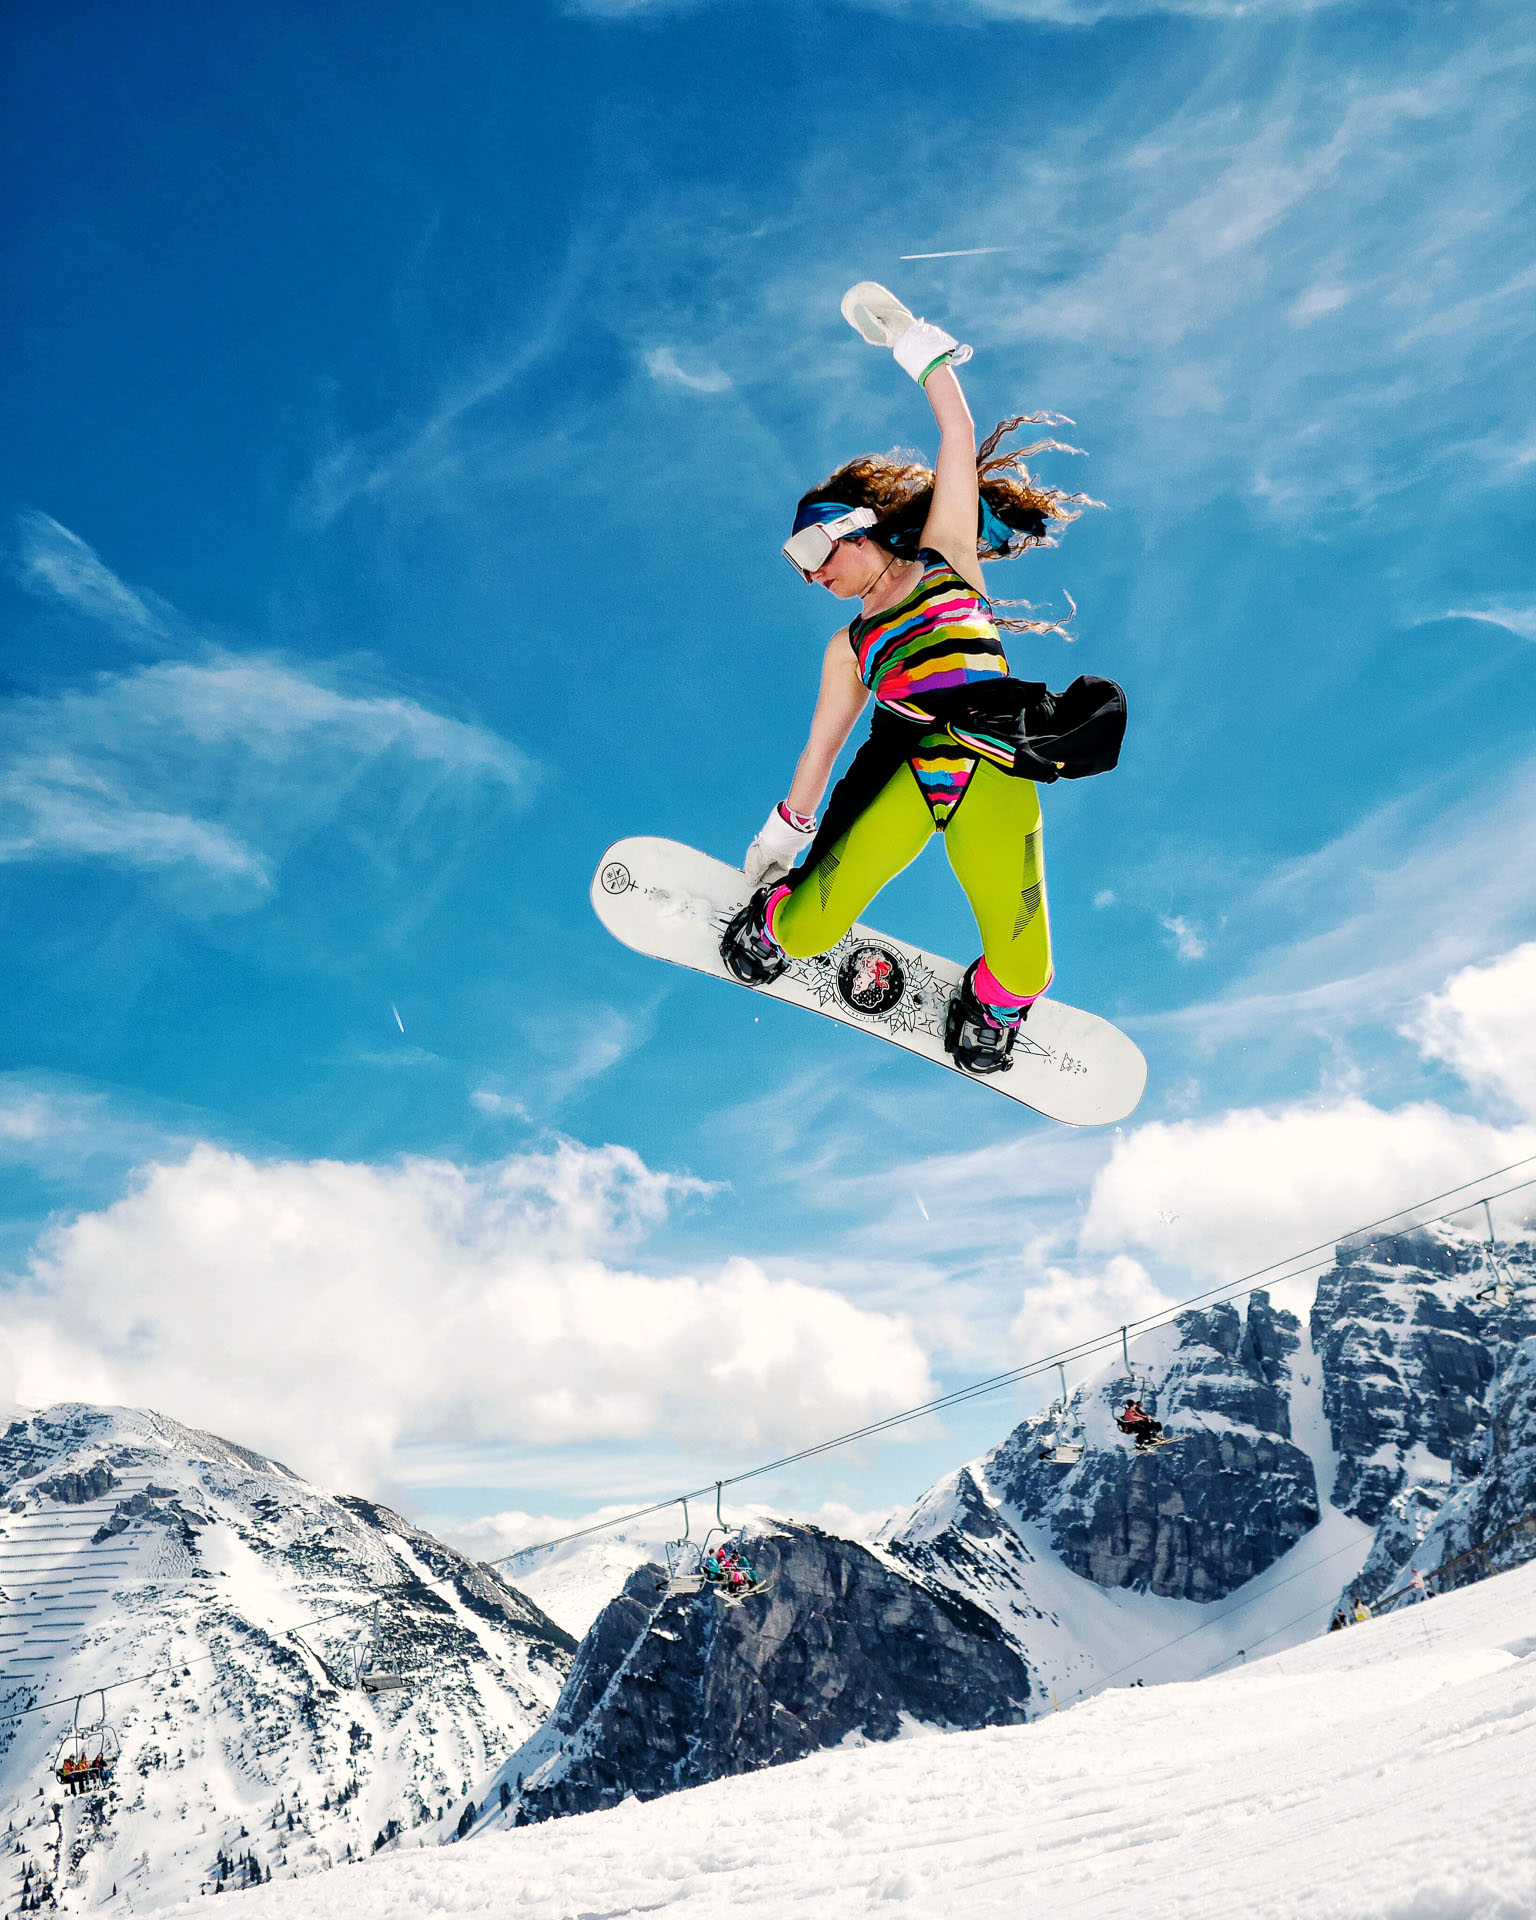 Eine Snowboarderin in ausgefallenem Outfit fährt im Funpark.